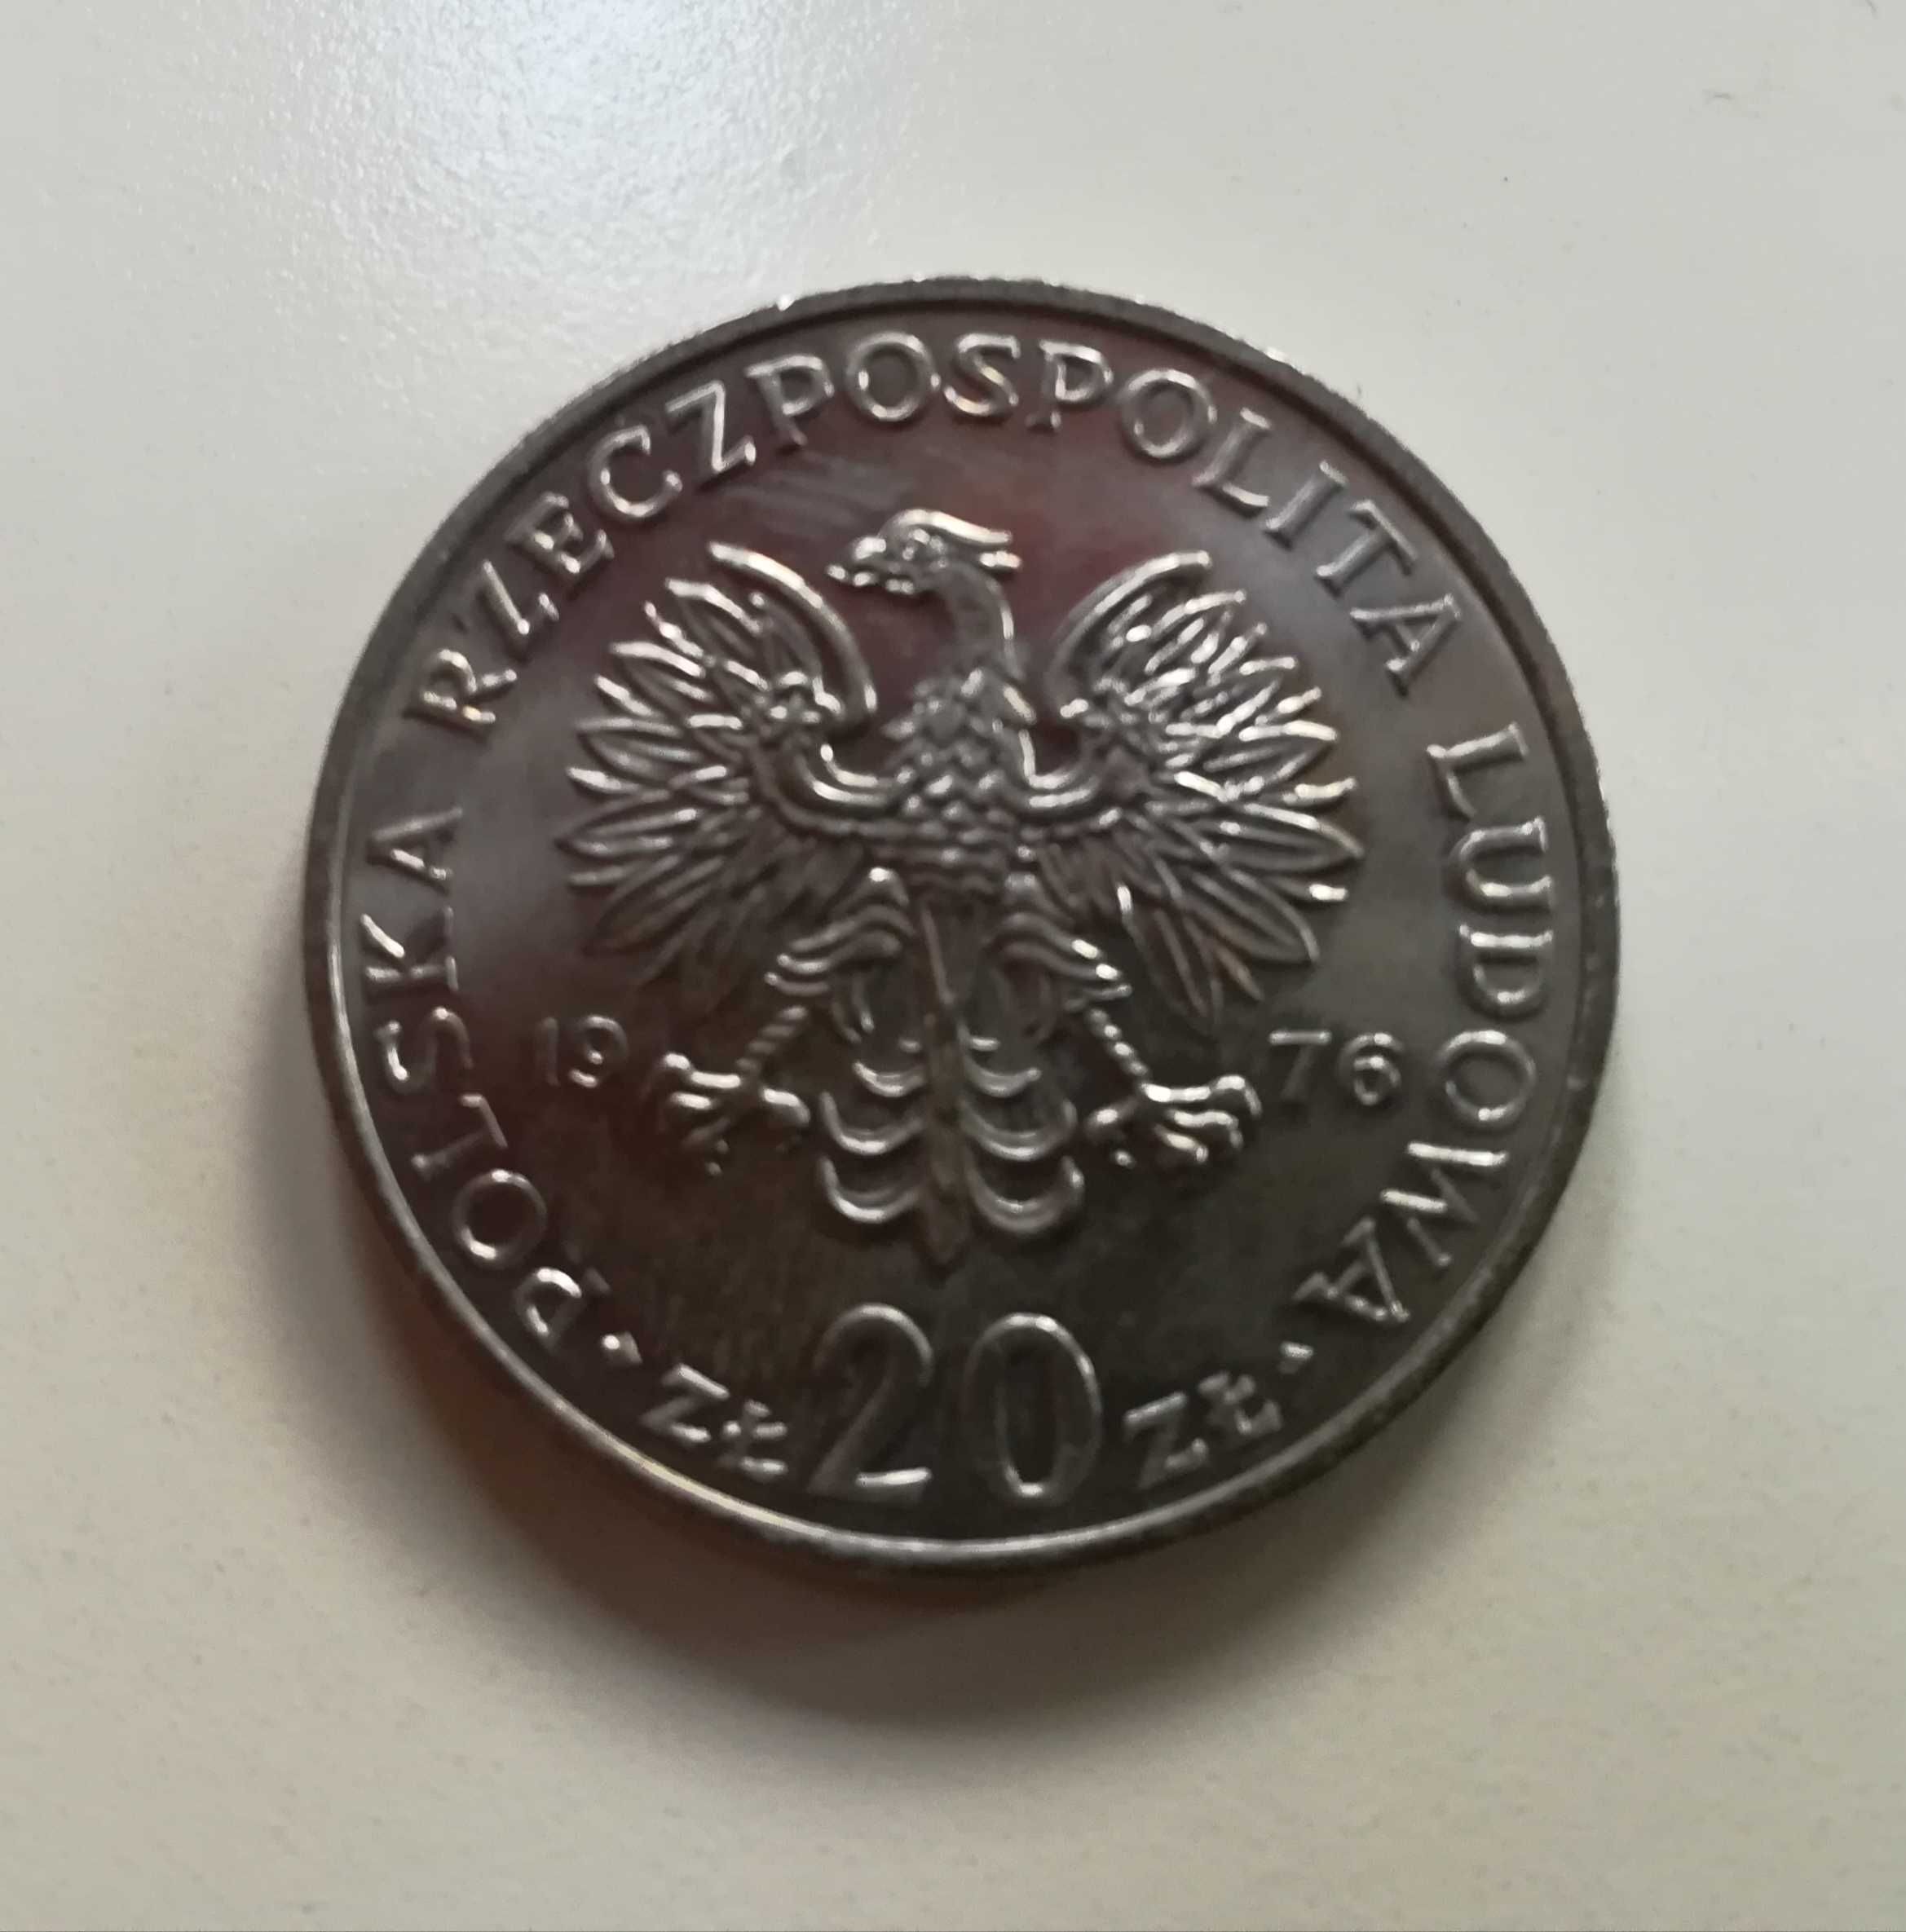 Moneta 20 zł z 1973 roku ("wieżowiec i kłosy")b. znaku , stan menniczy